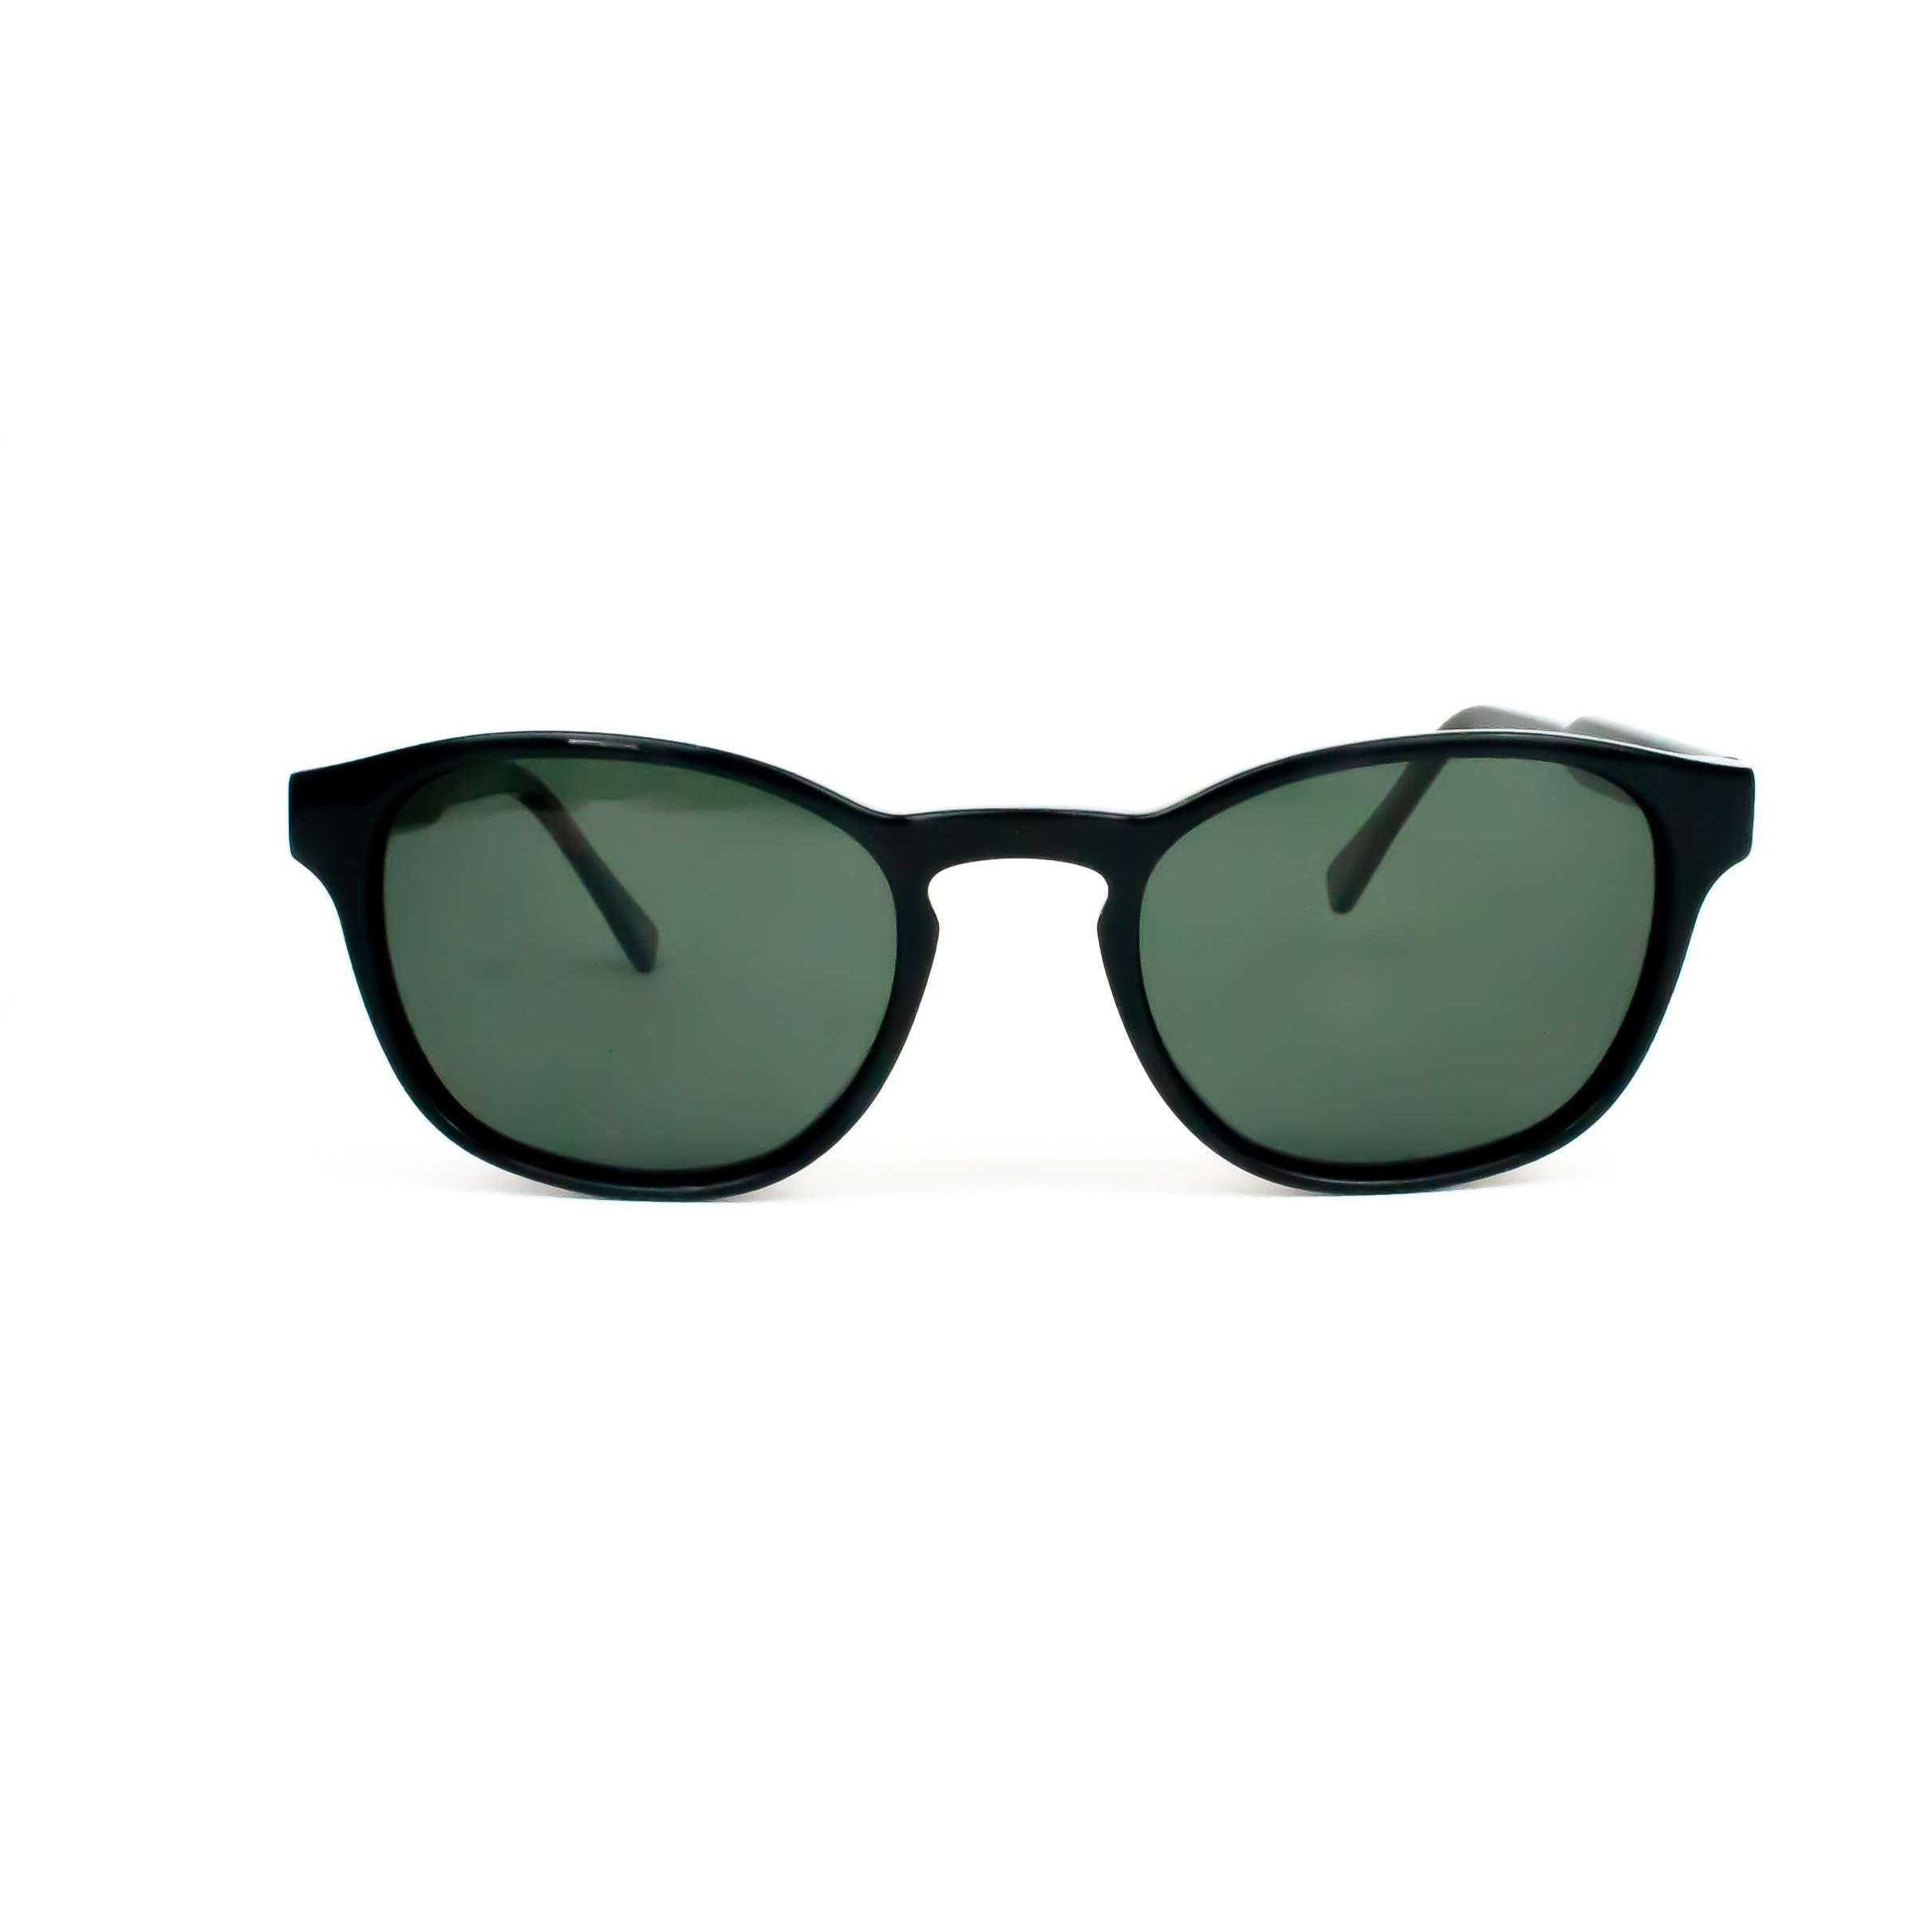 SunTropical sunglasses in dark tortoiseshell